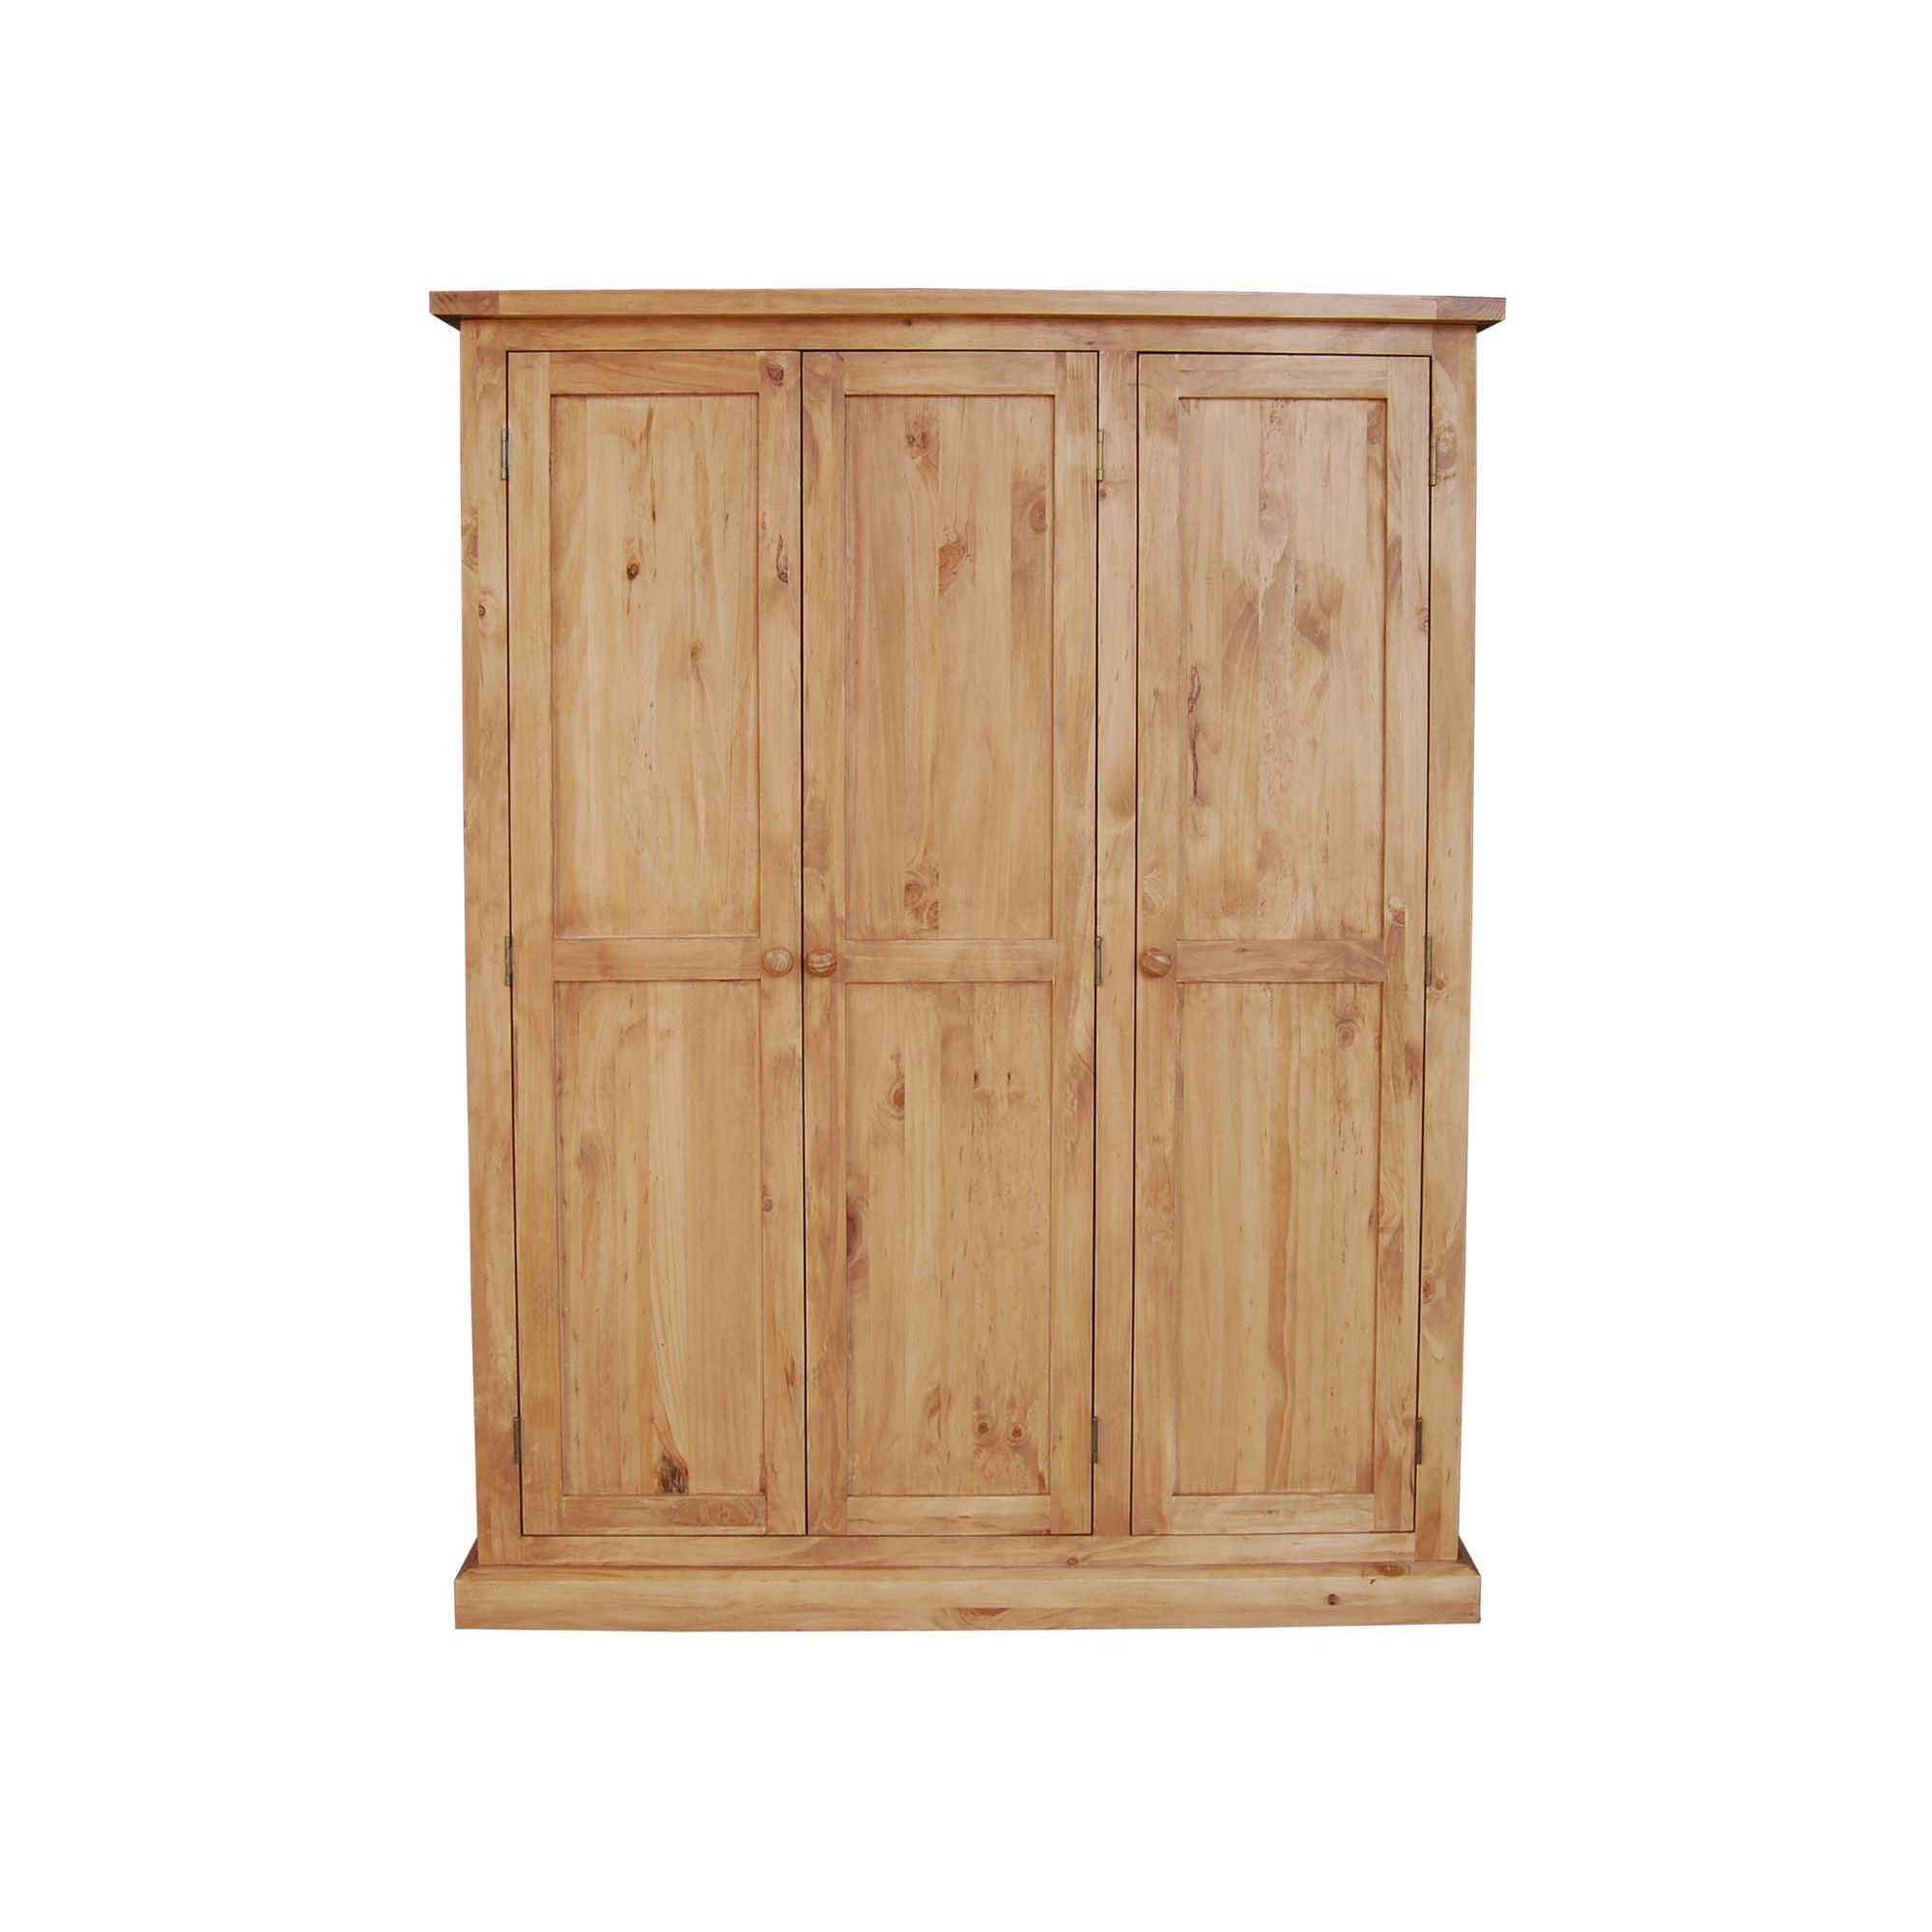 Furniture Link Devon Three Door Wardrobe in Pine at Tesco Direct